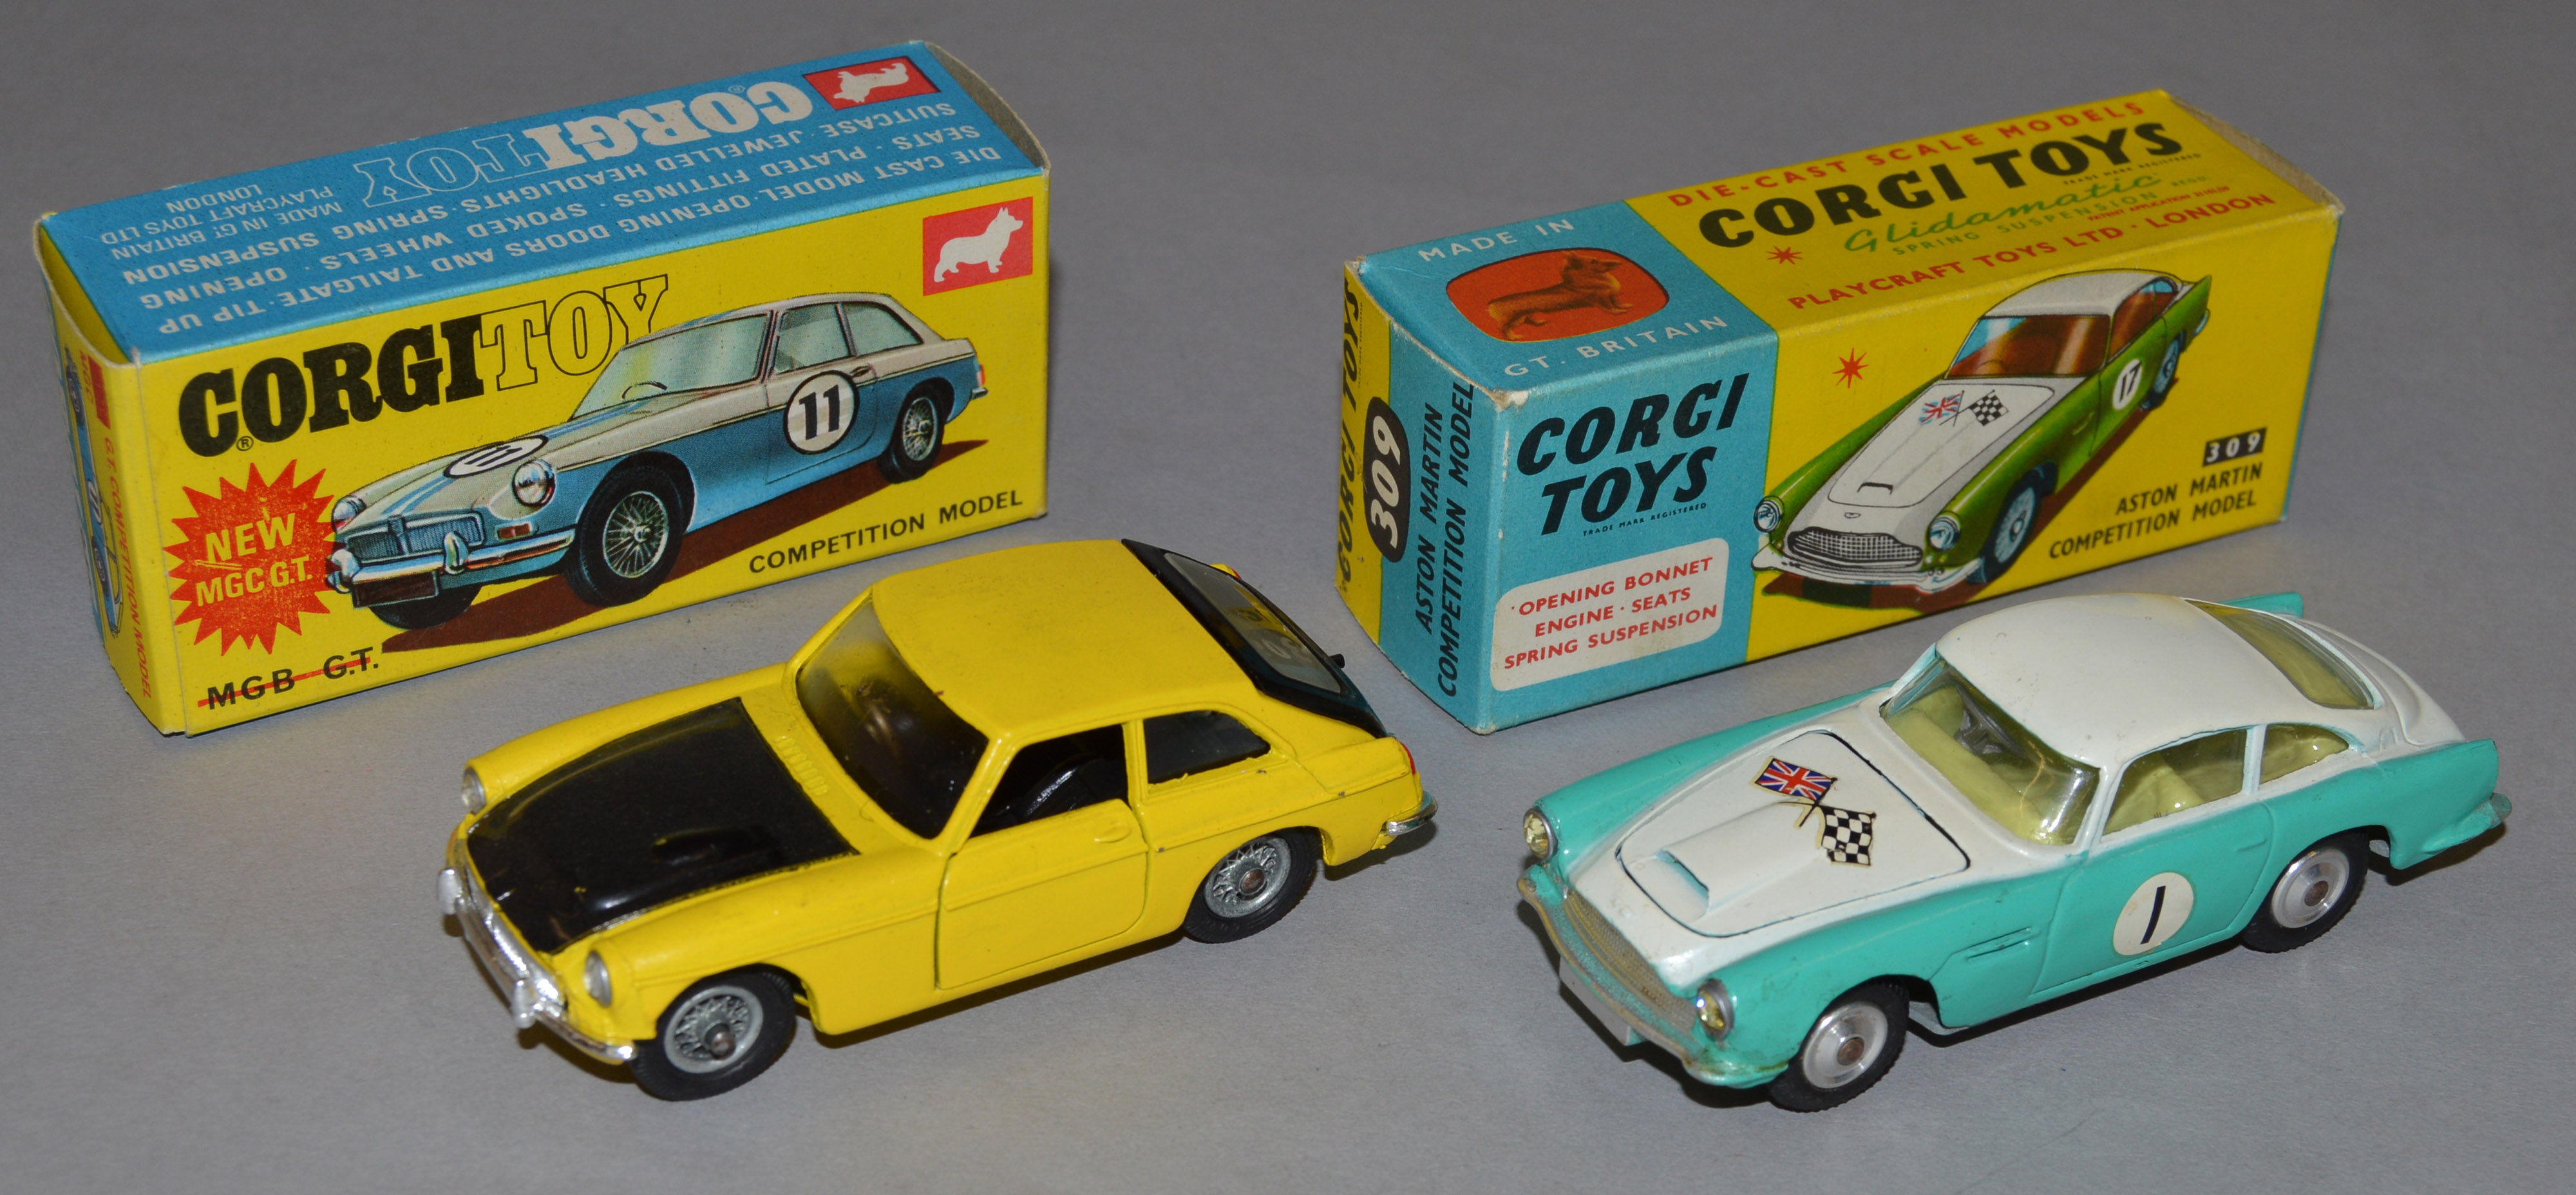 Two boxed Corgi Toys,